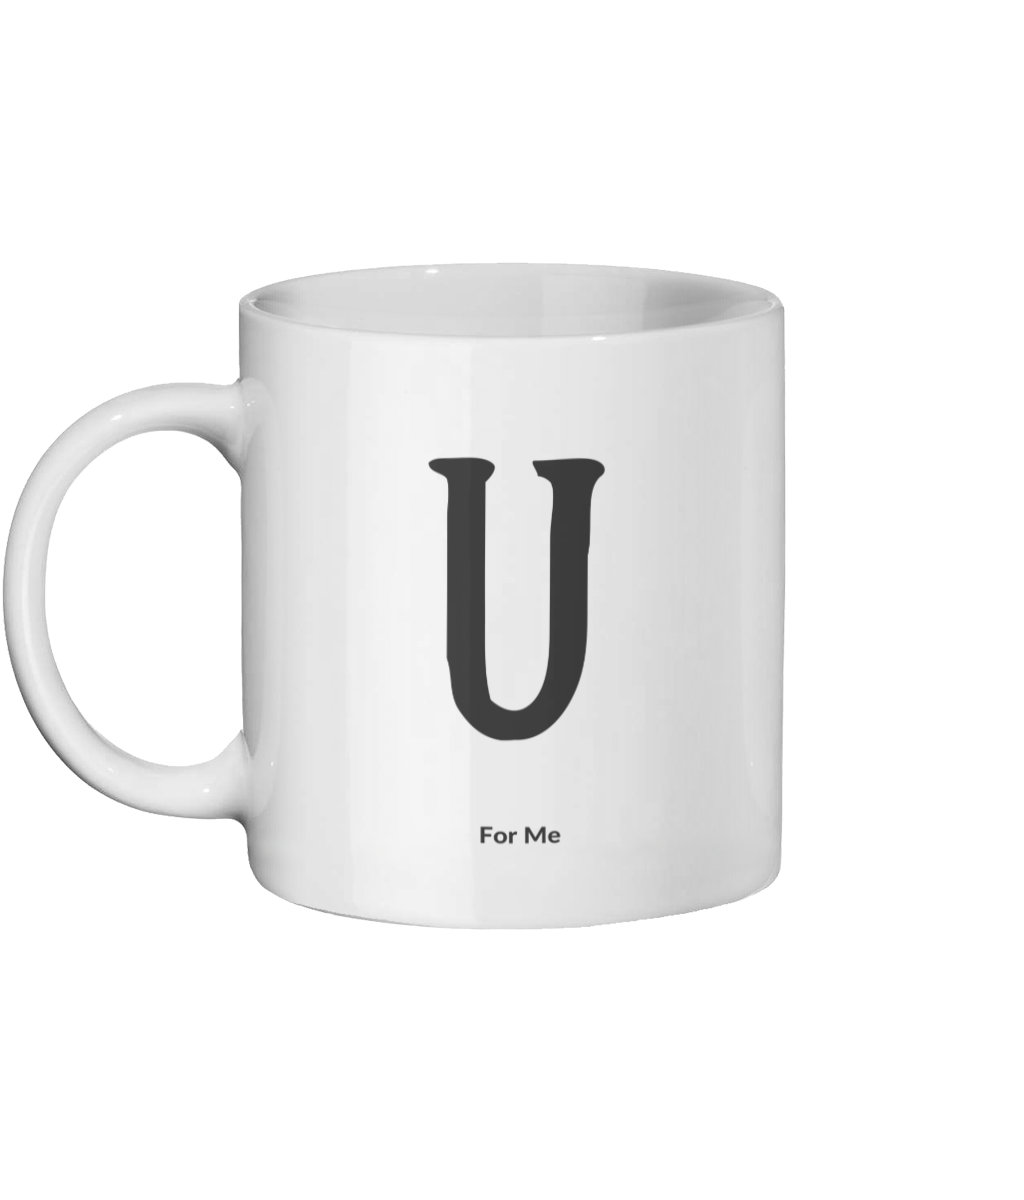 U For Me Mug Left-side